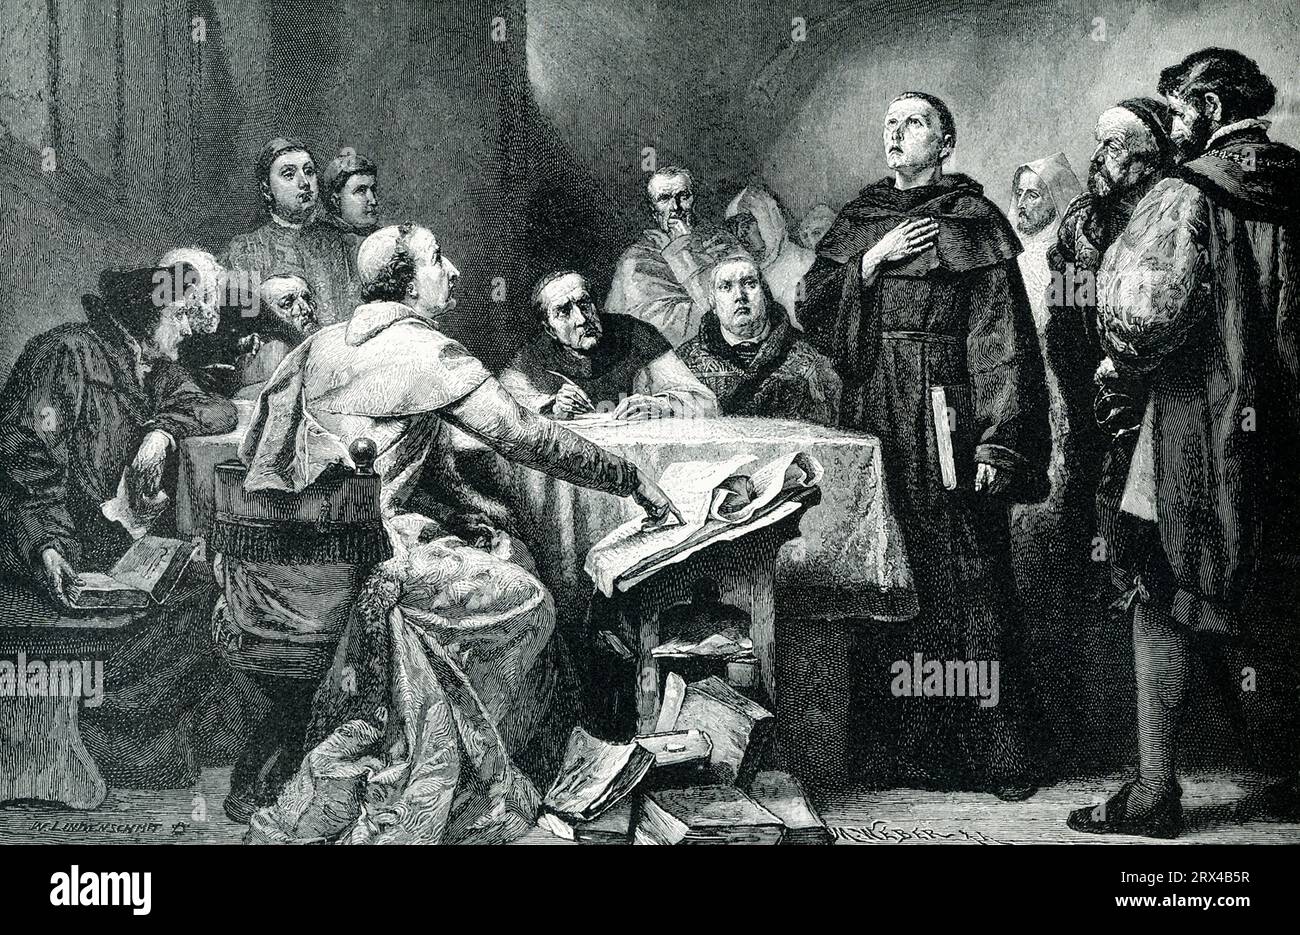 Luther avant le cardinal Cajetanus. Luther, le grand réformateur allemand, a d'abord été convoqué pour expliquer ses doctrines devant le légat pontifical Cajetanus. L'empereur allemand avait supplié Cajetanus de traiter doucement avec le moine savant, et le légat a essayé de le faire, mais finalement ordonné avec toute l'autorité sévère de l'Église, qu'il devrait abandonner Banque D'Images